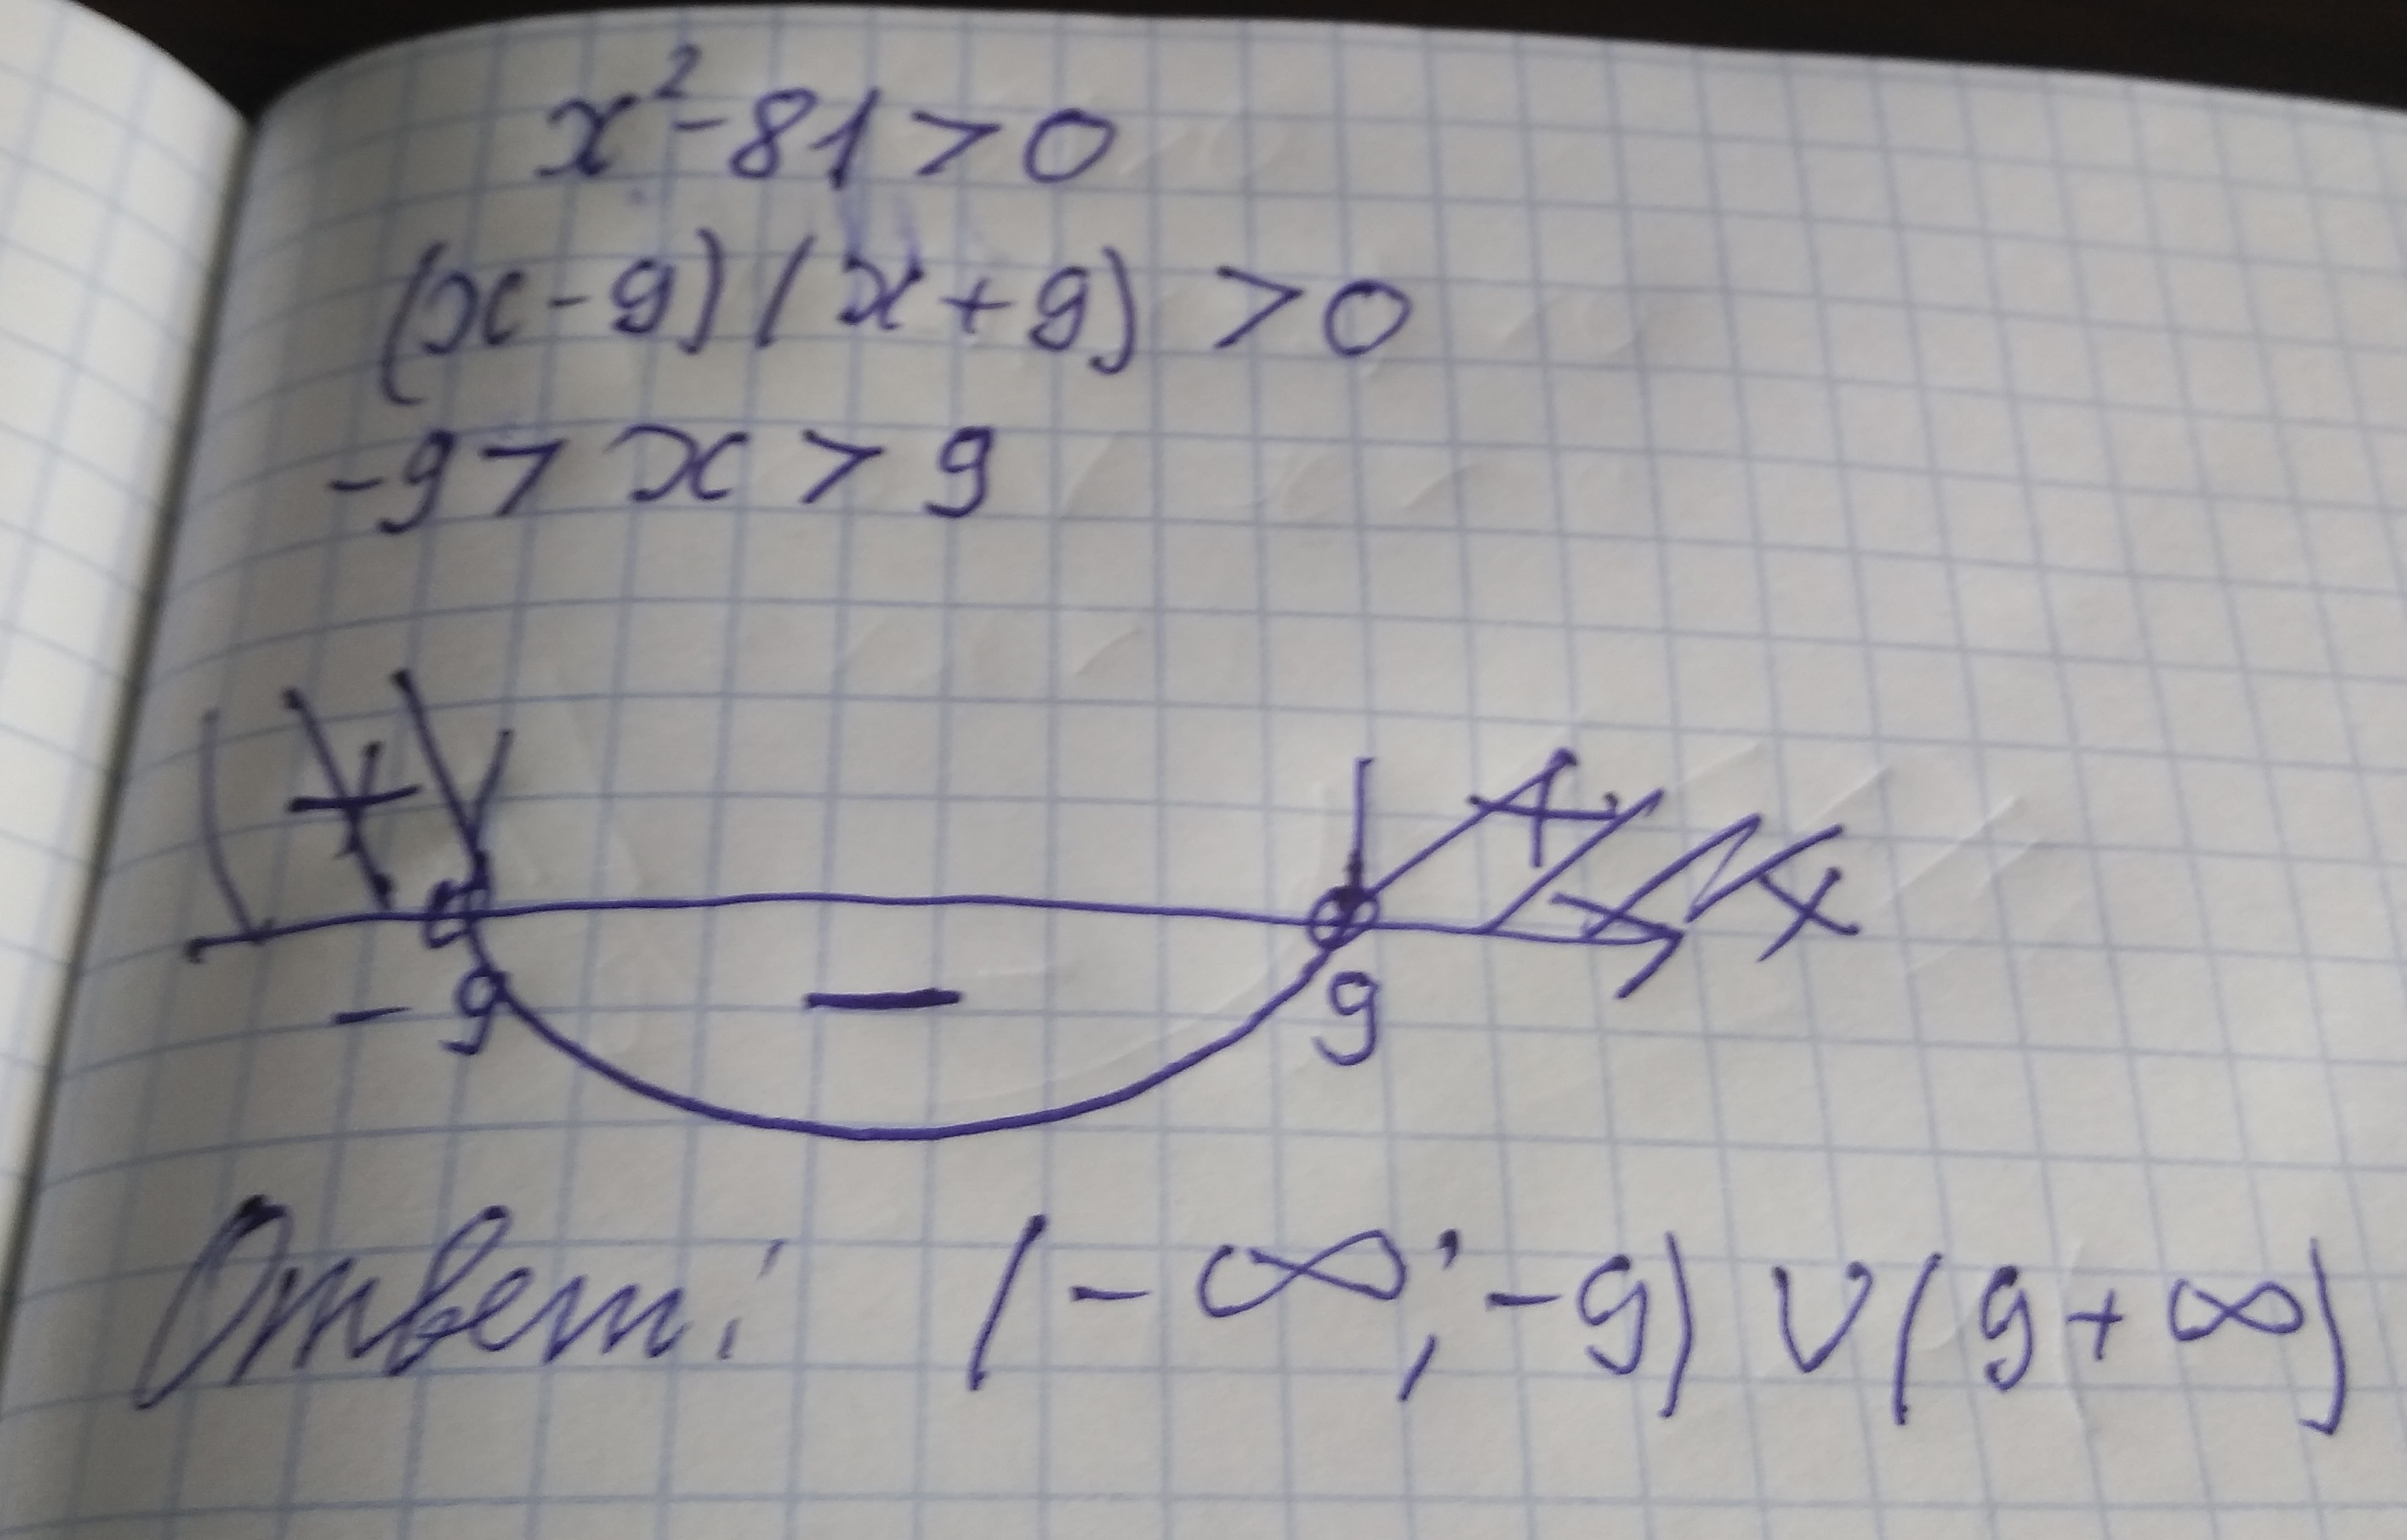 81х2 больше 64. Решите неравенство x2 81. Неравенство x^2<81. X^2-81=0. X^2>81 решение неравенства.